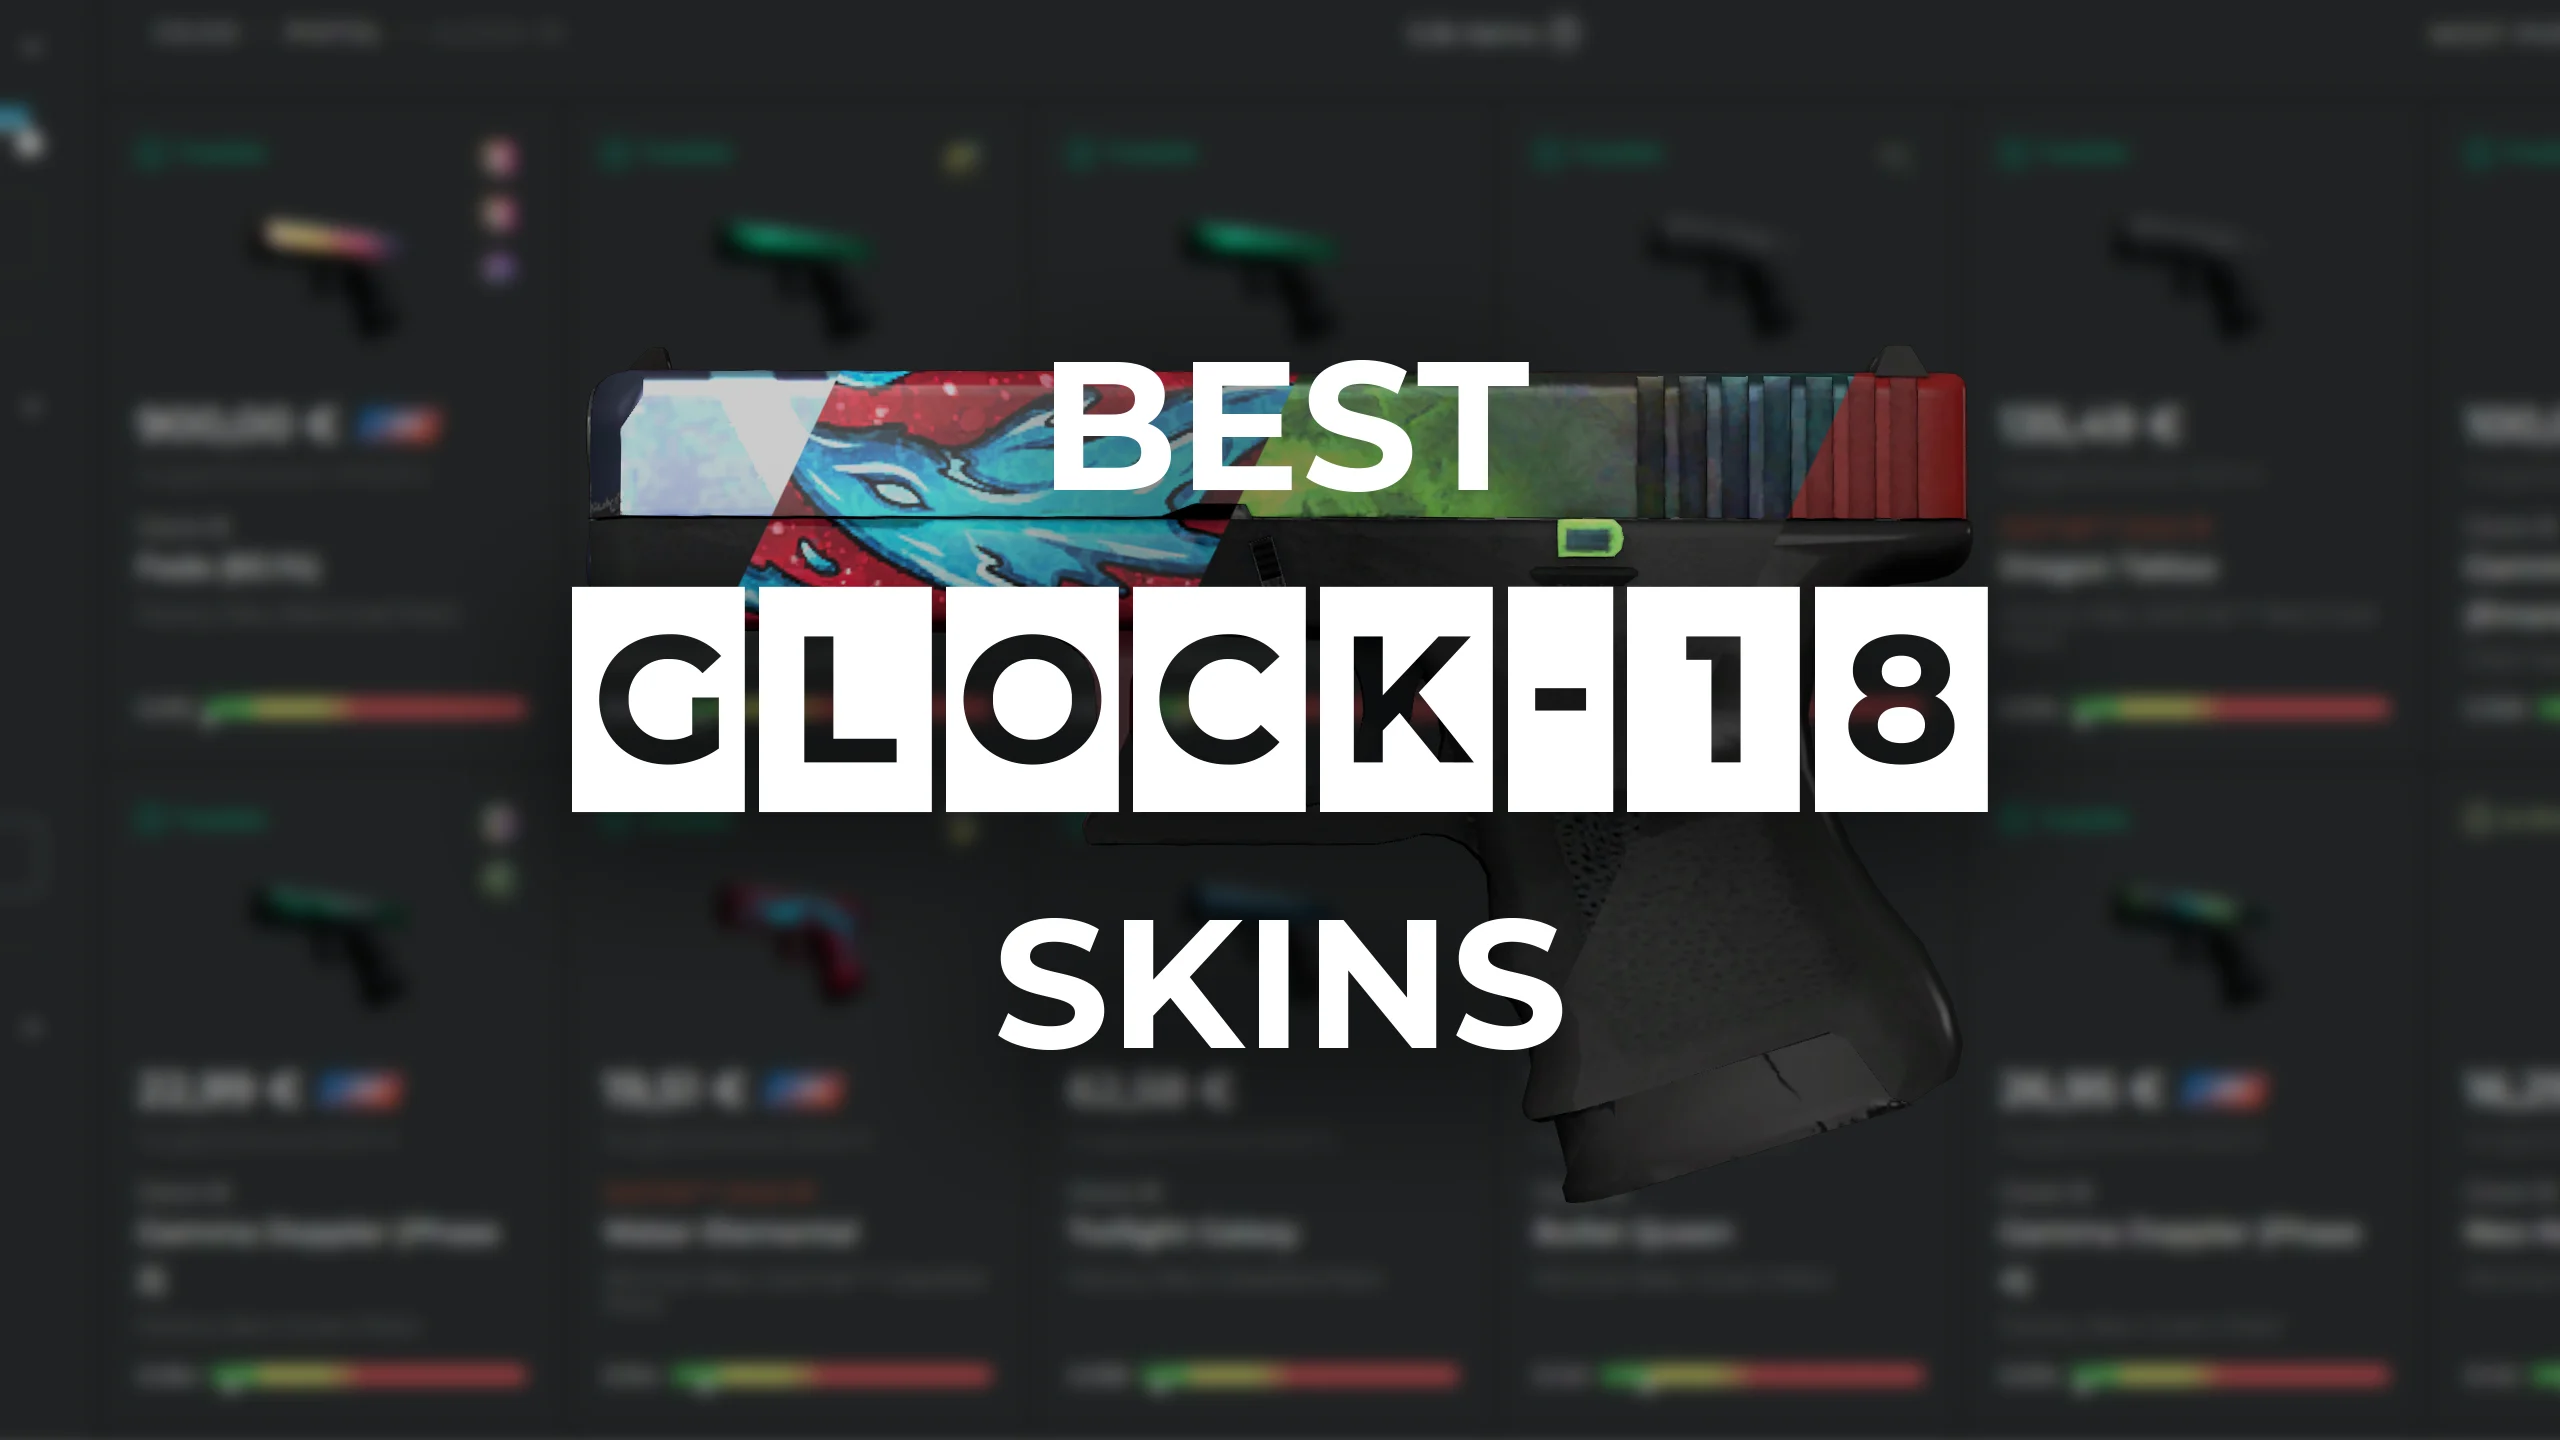 Best Glock-18 Skins 2022